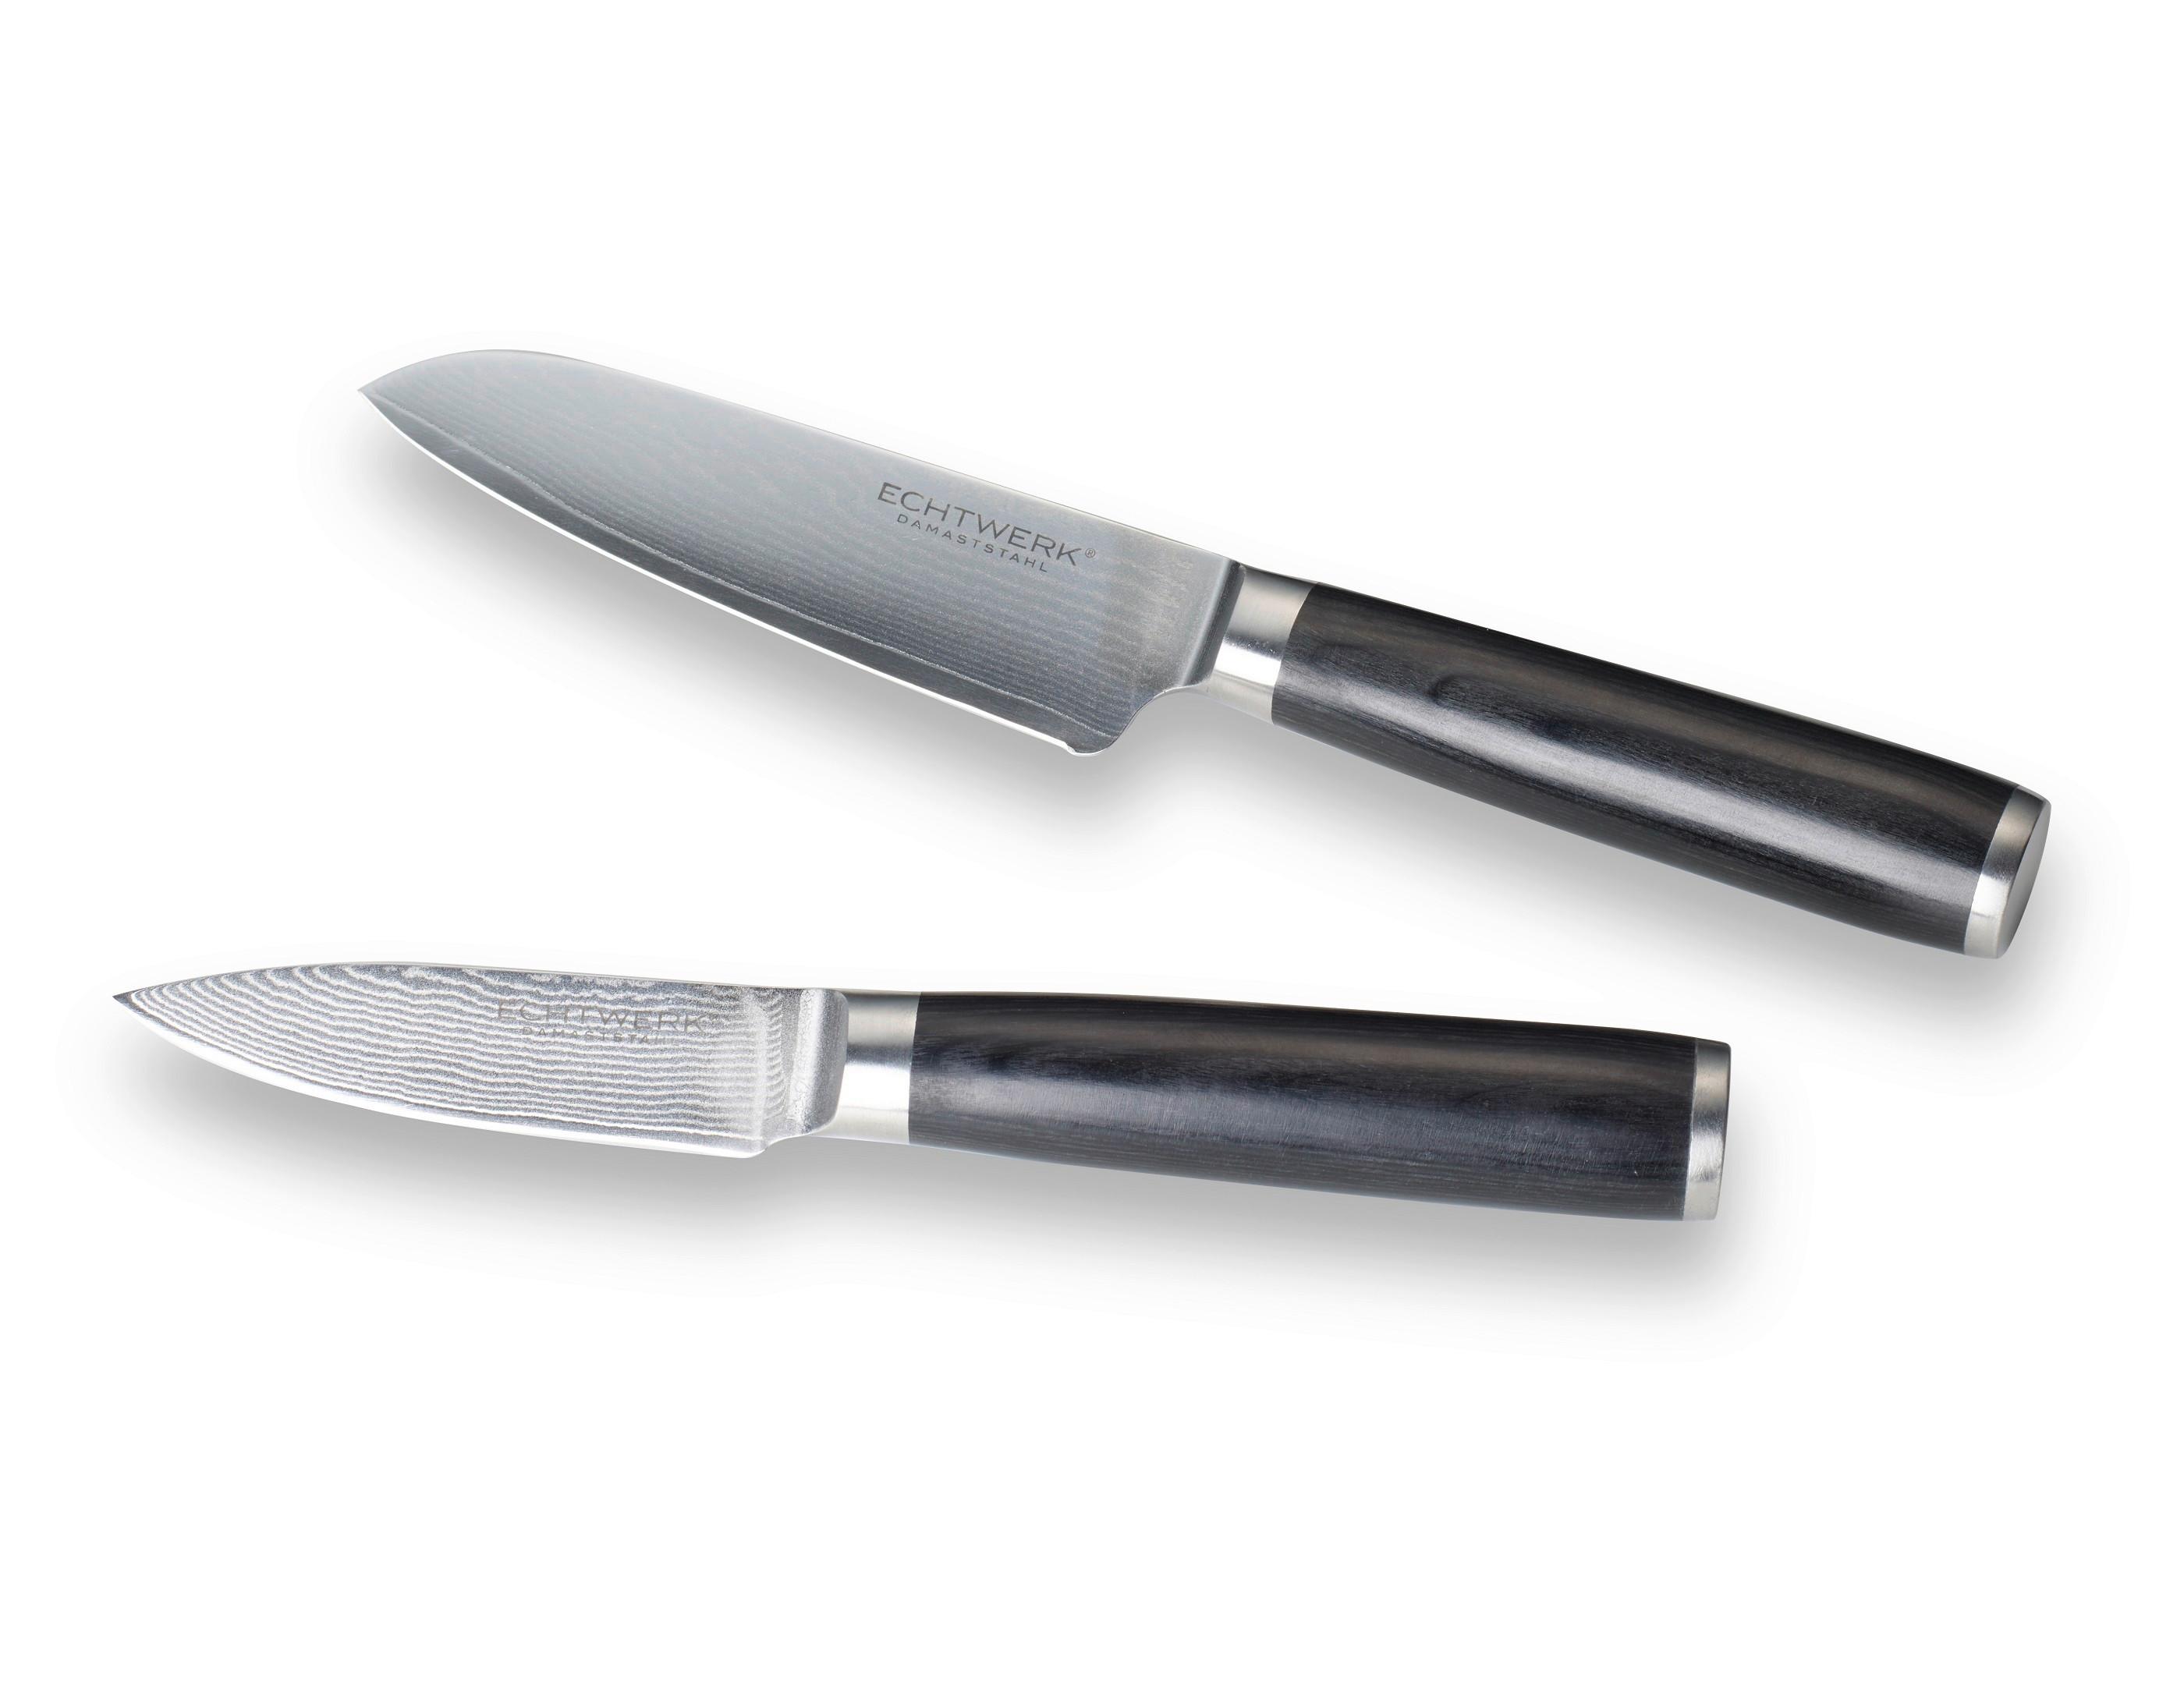 Messer-Set von Echtwerk » günstig kaufen online